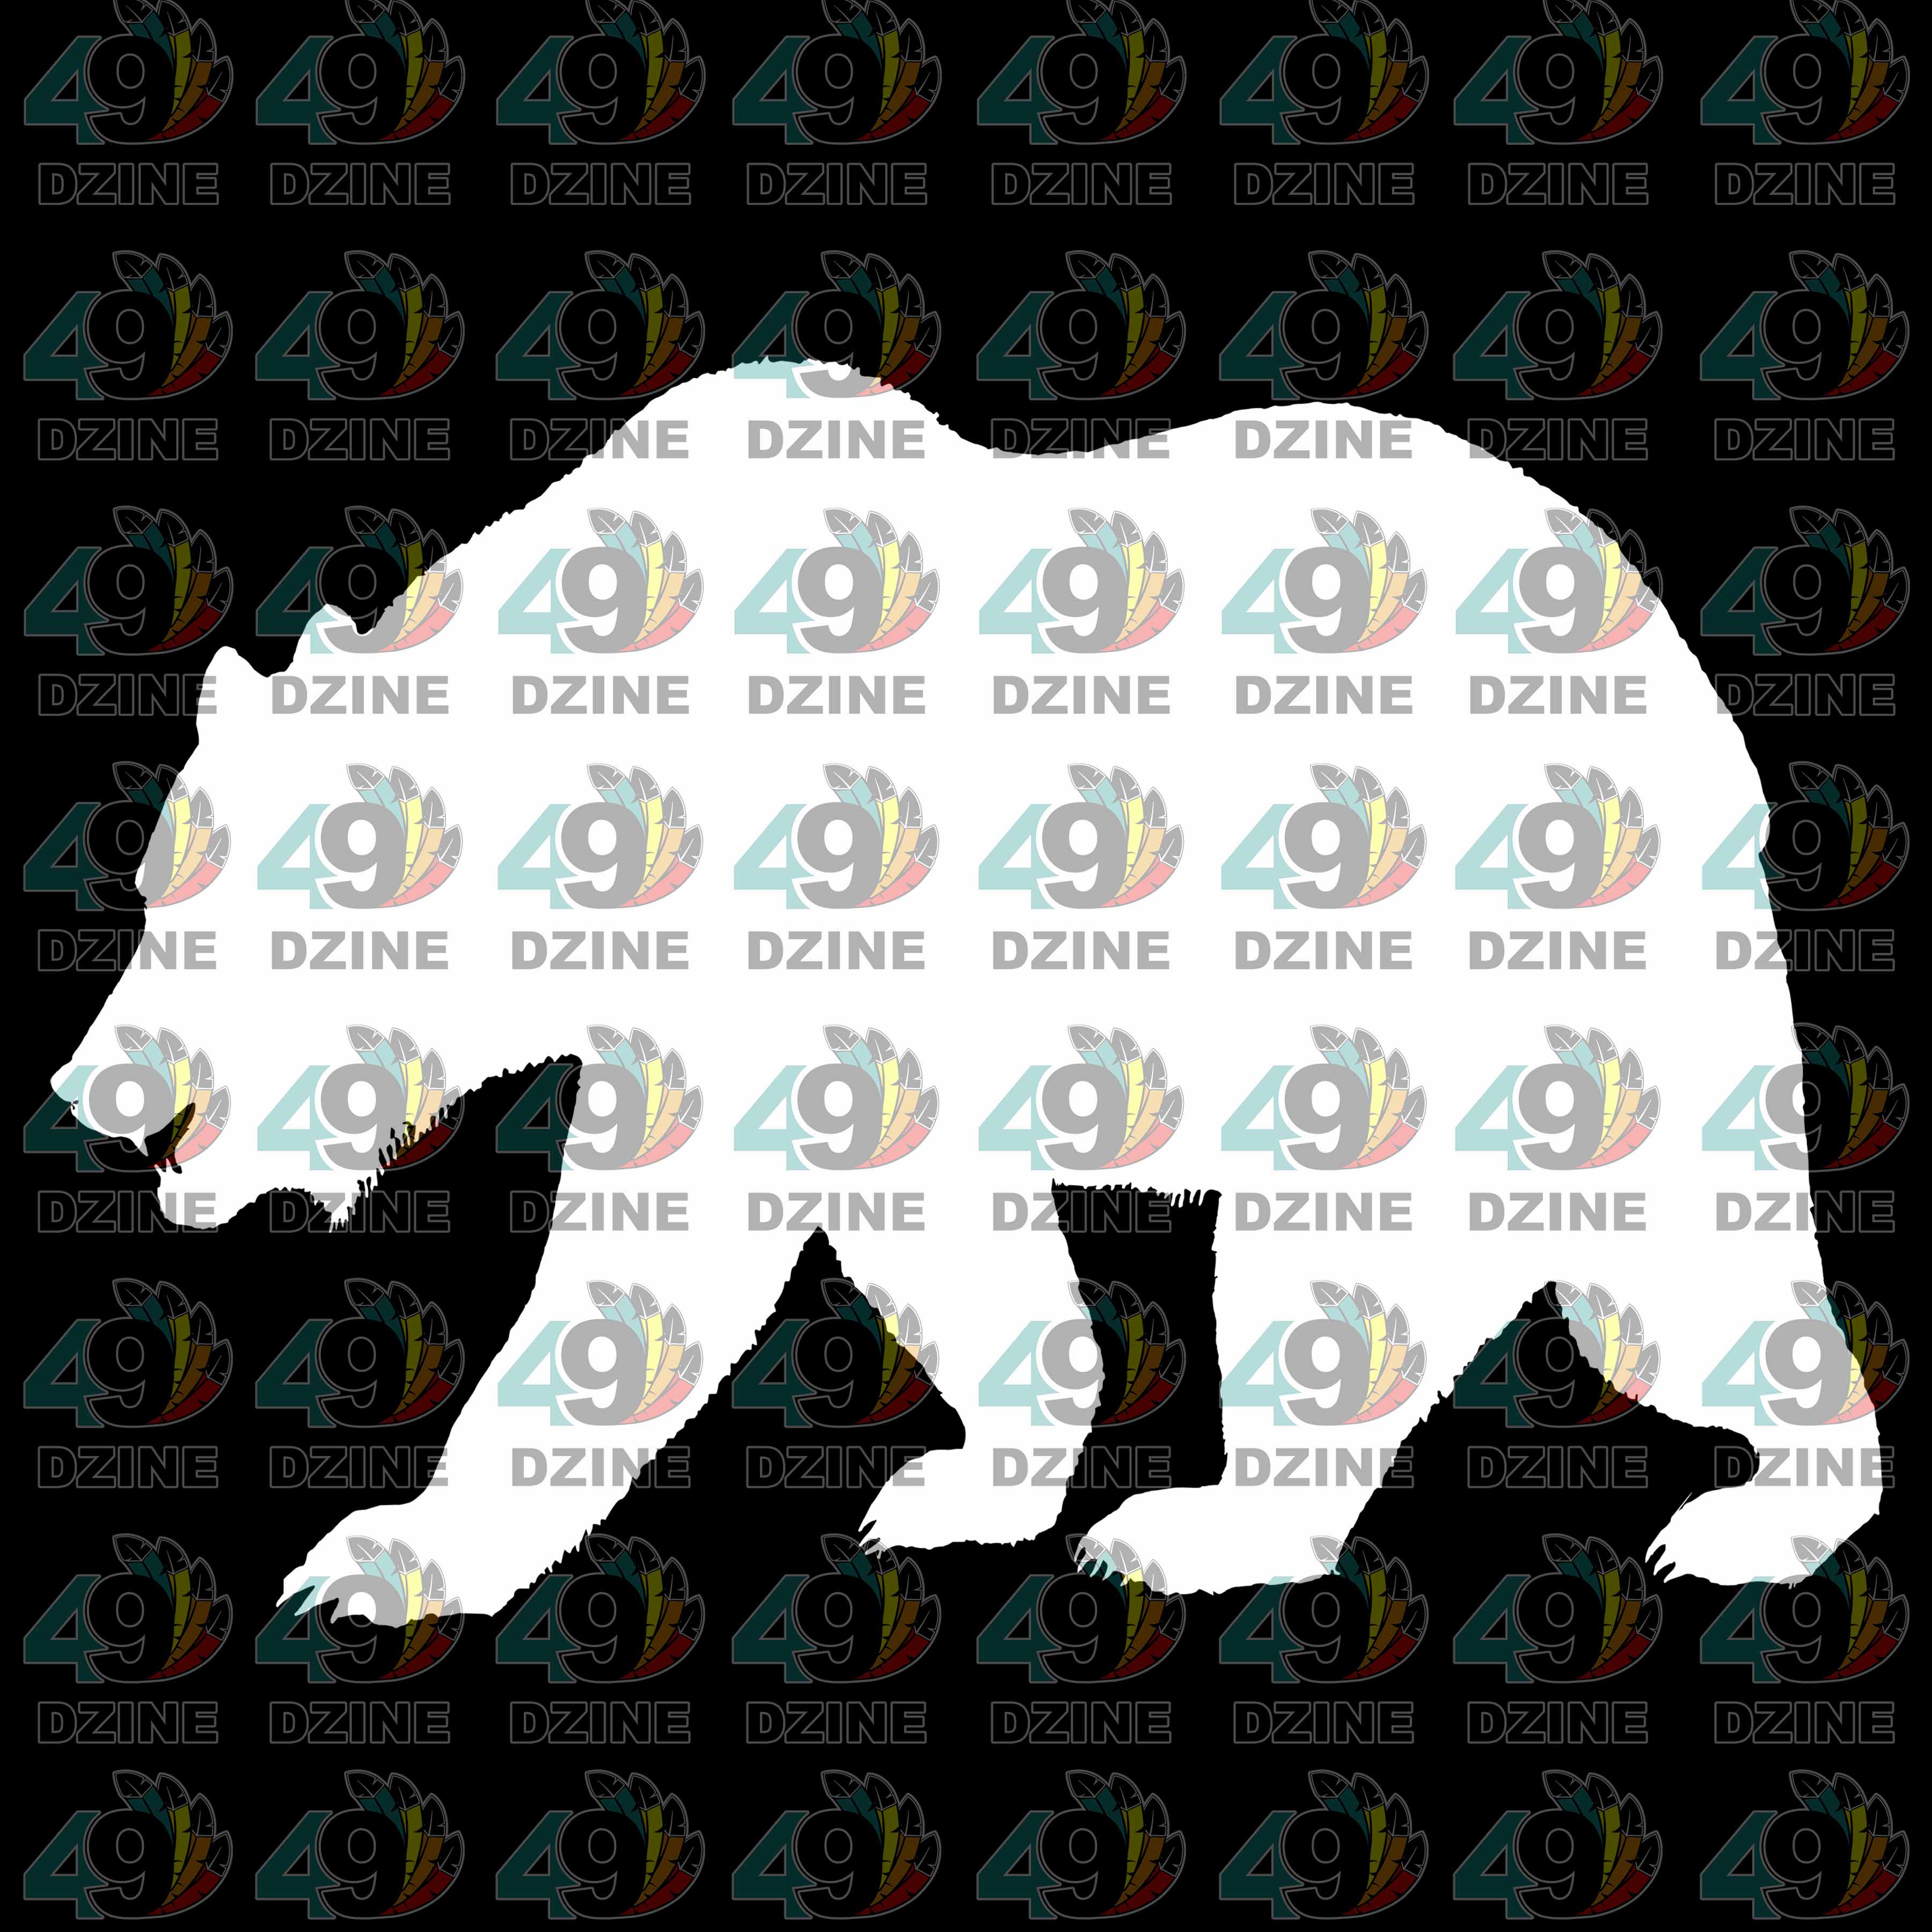 12-inch White Black Bear Transfer